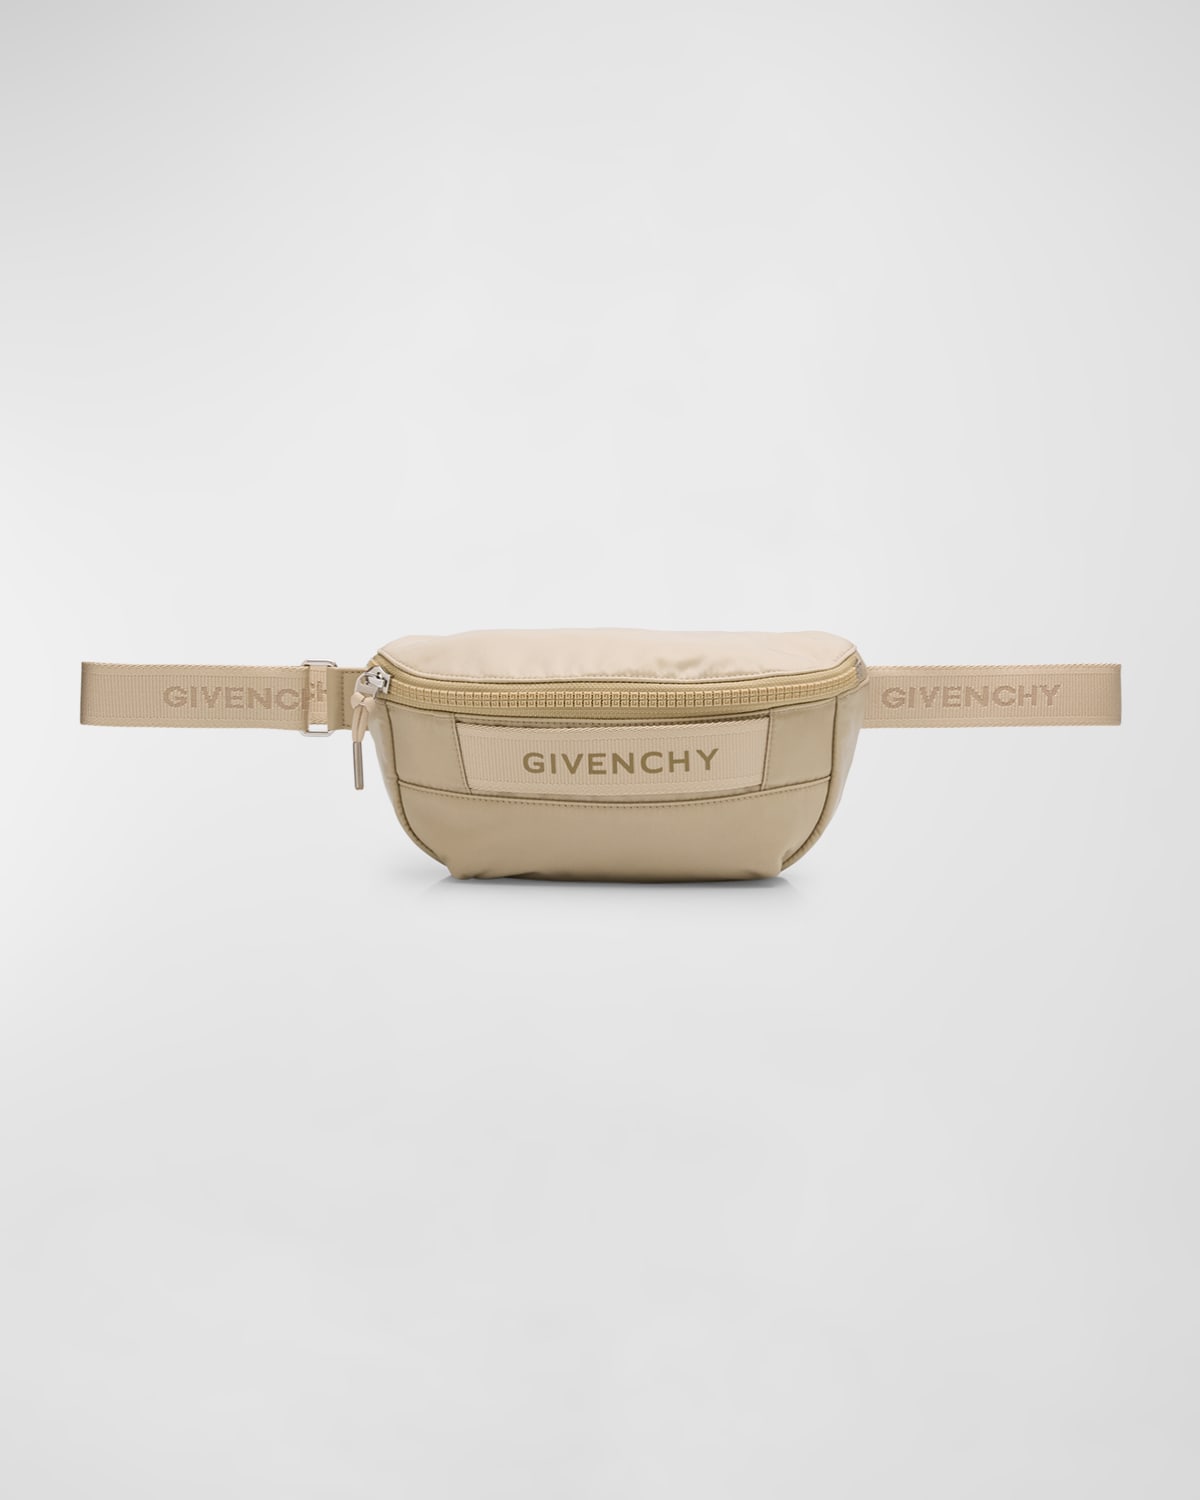 Givenchy Men's G-trek Nylon Belt Bag In Beige/cream